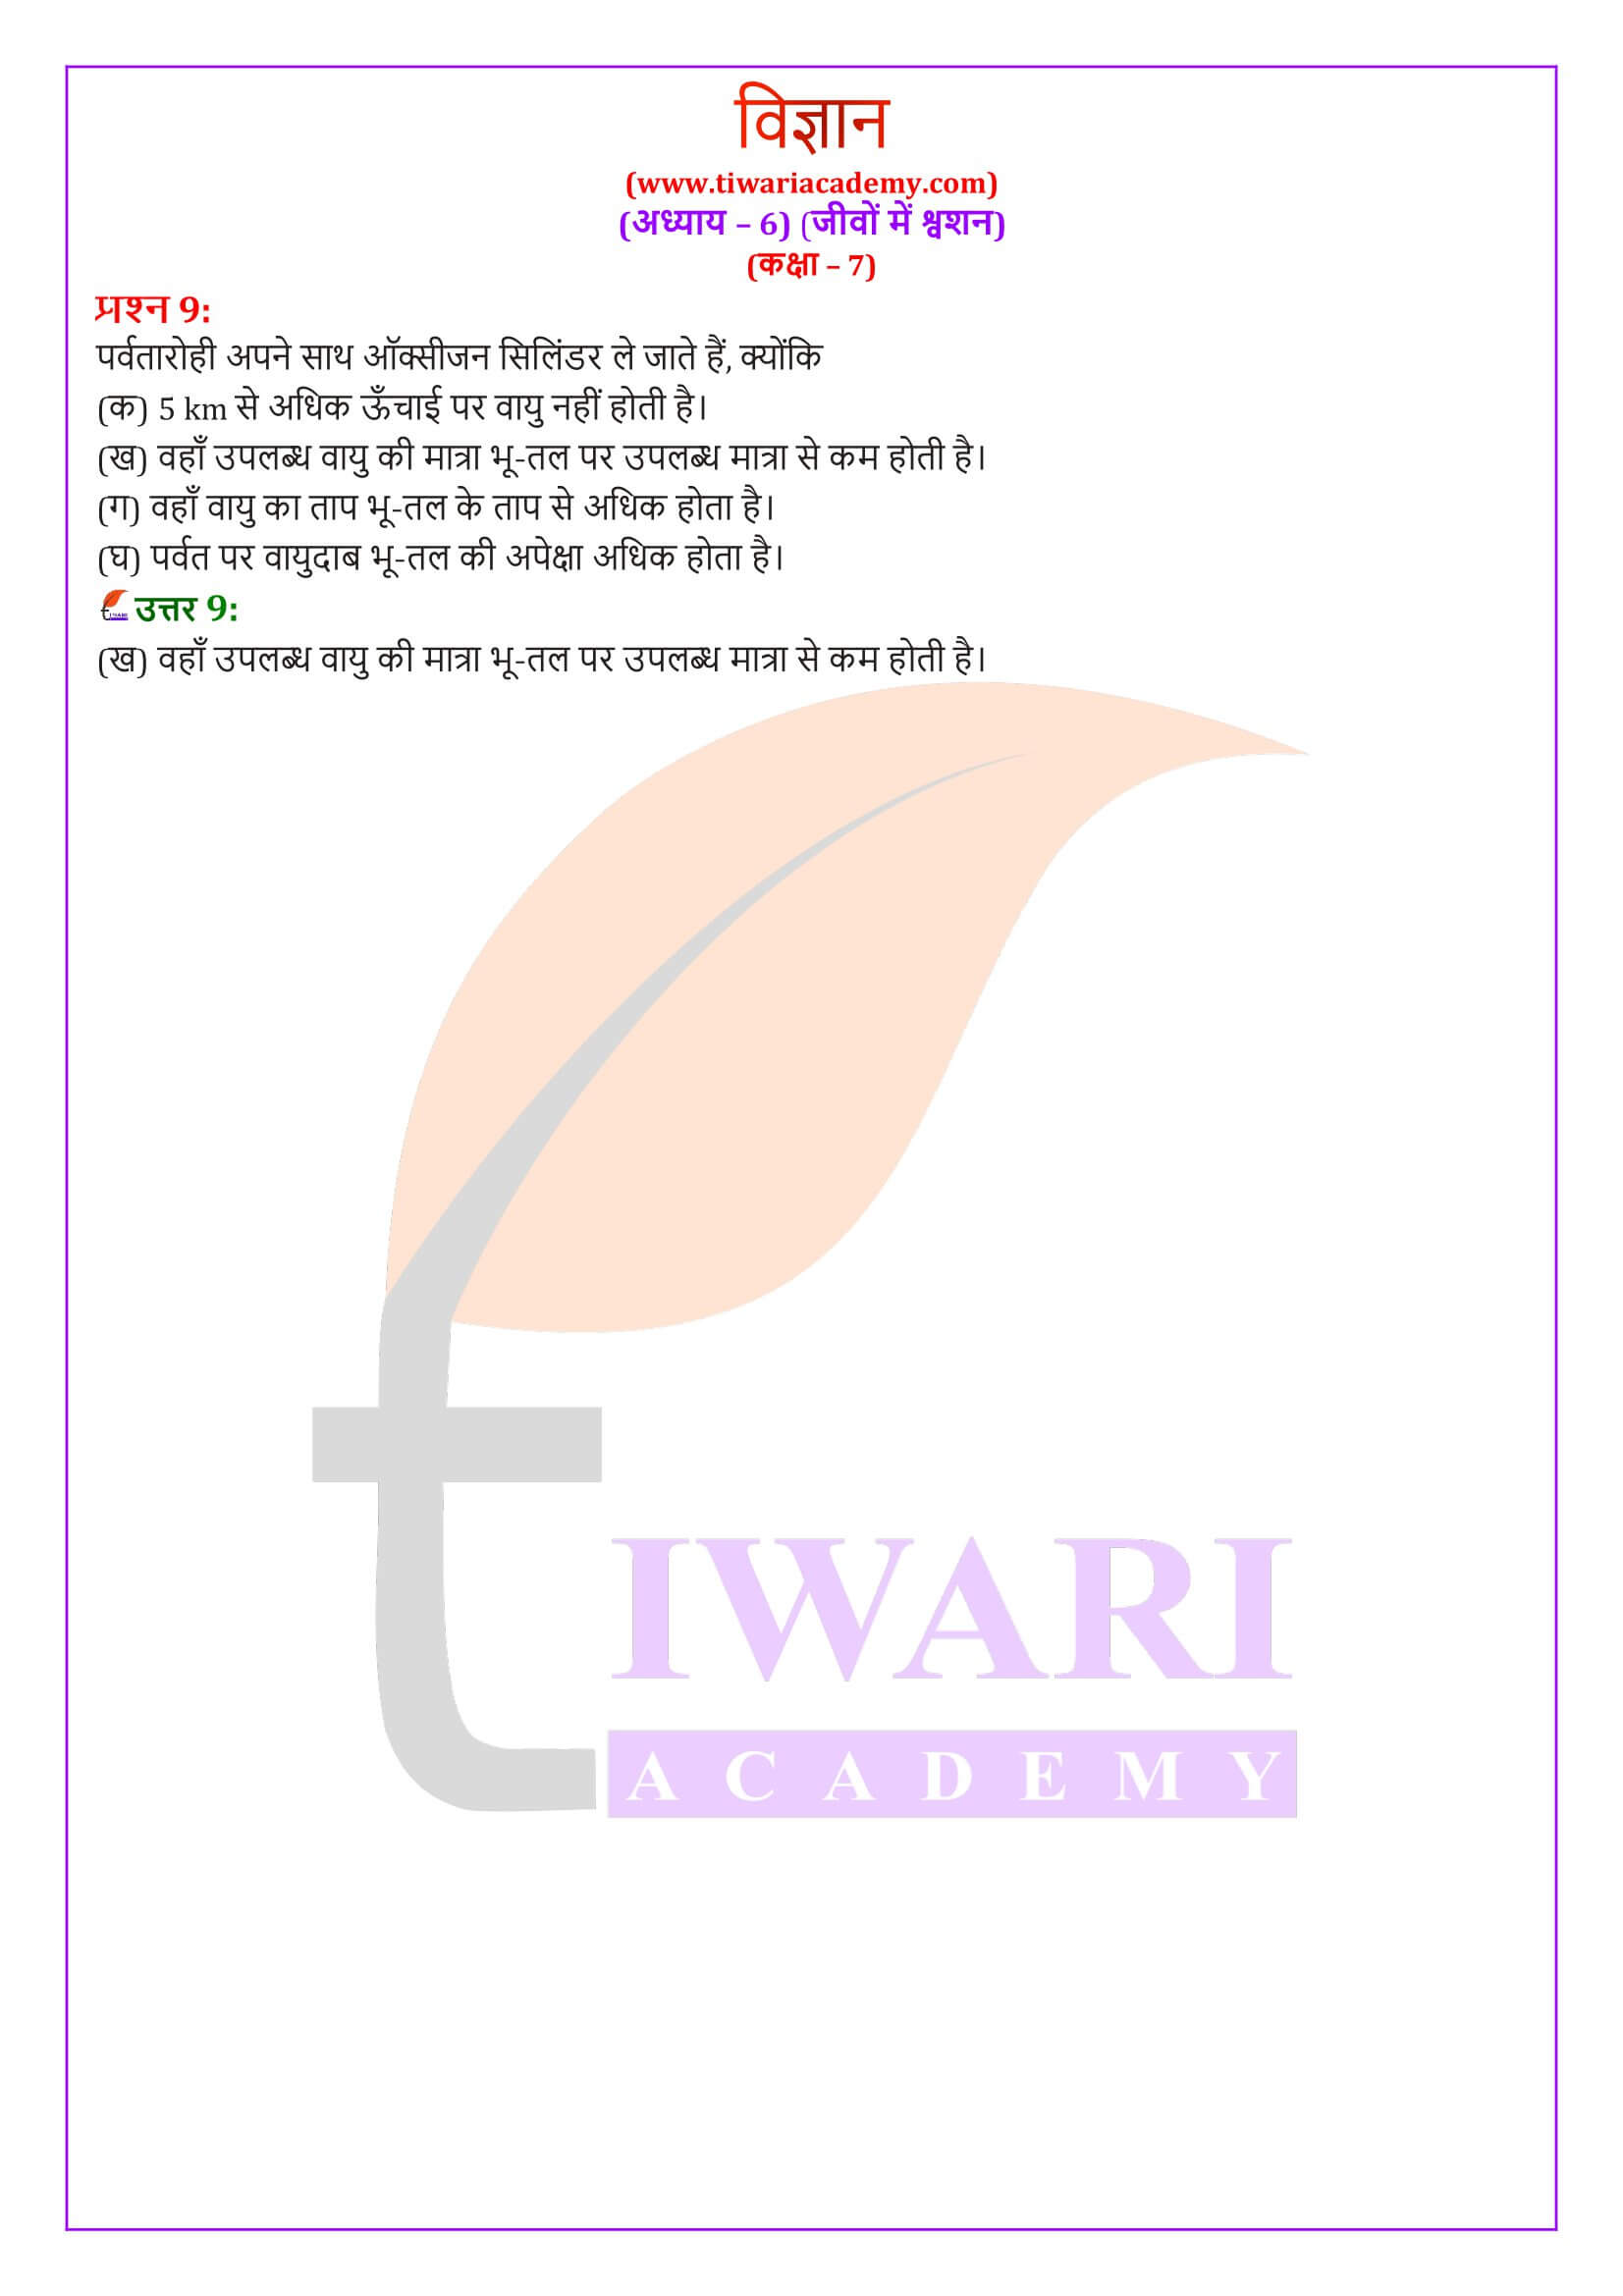 कक्षा 7 विज्ञान अध्याय 6 की हिंदी में गाइड